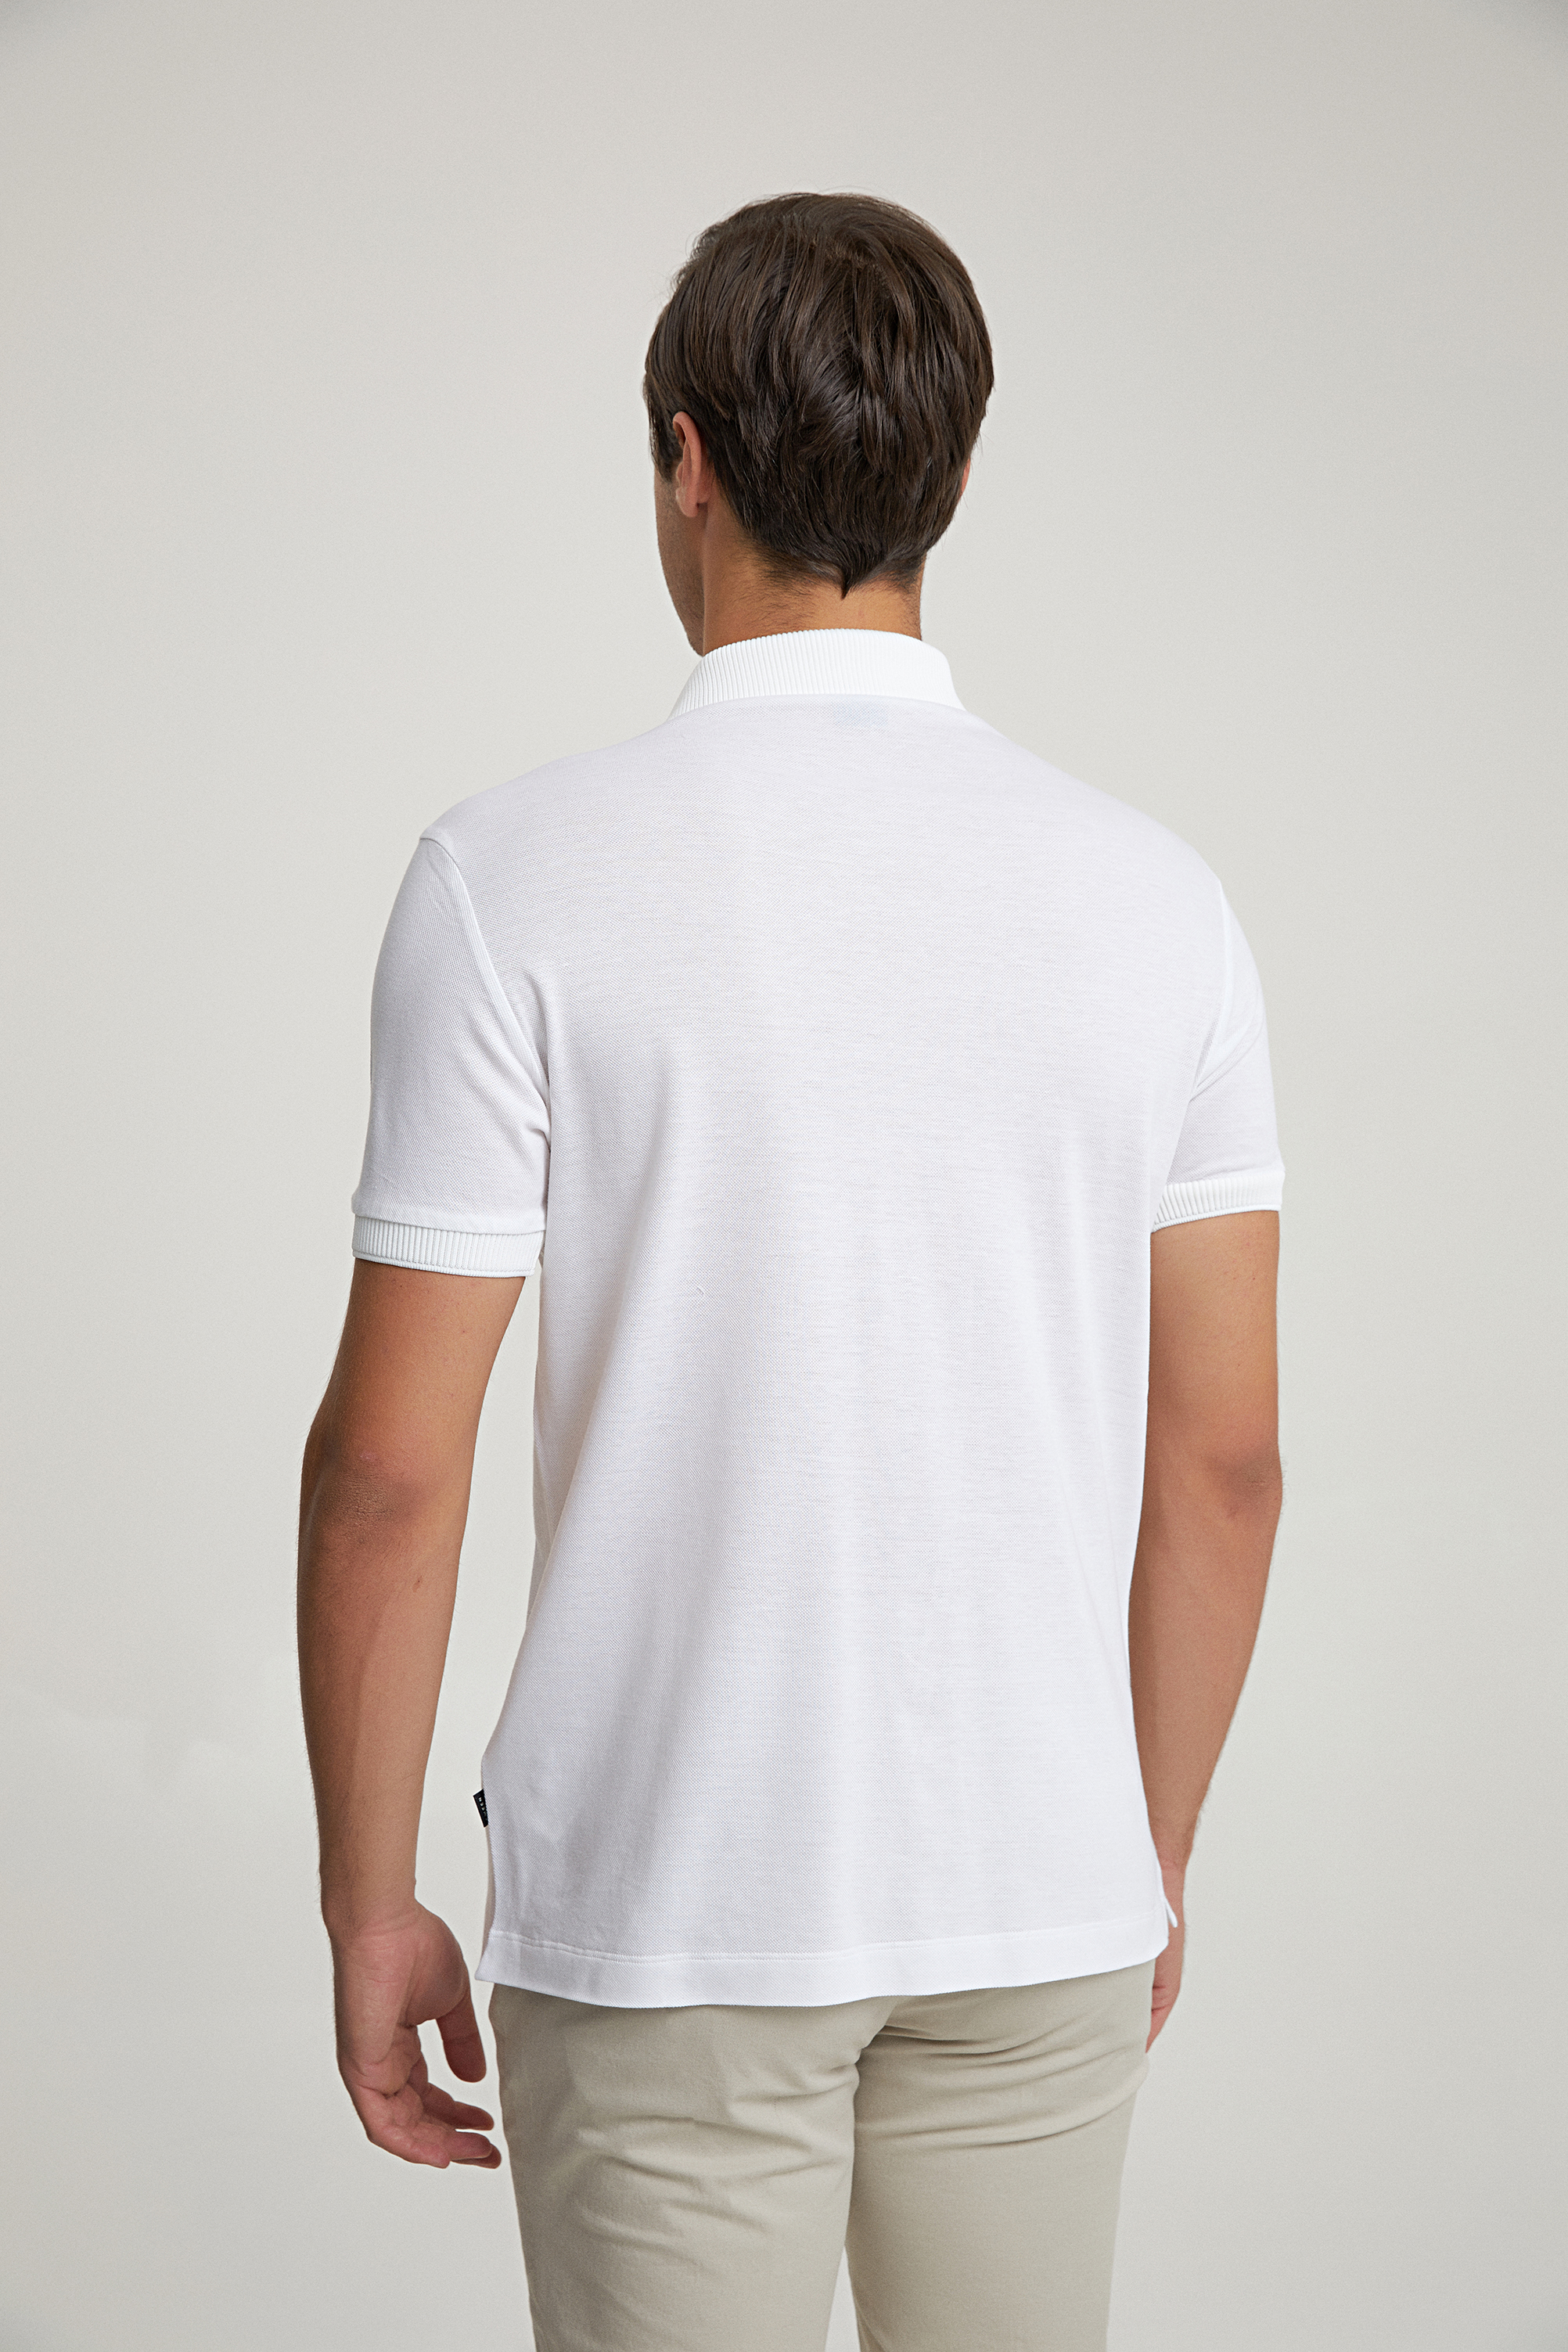 Damat Tween Tween Slim Fit Beyaz Düz Örme Gömlek. 4